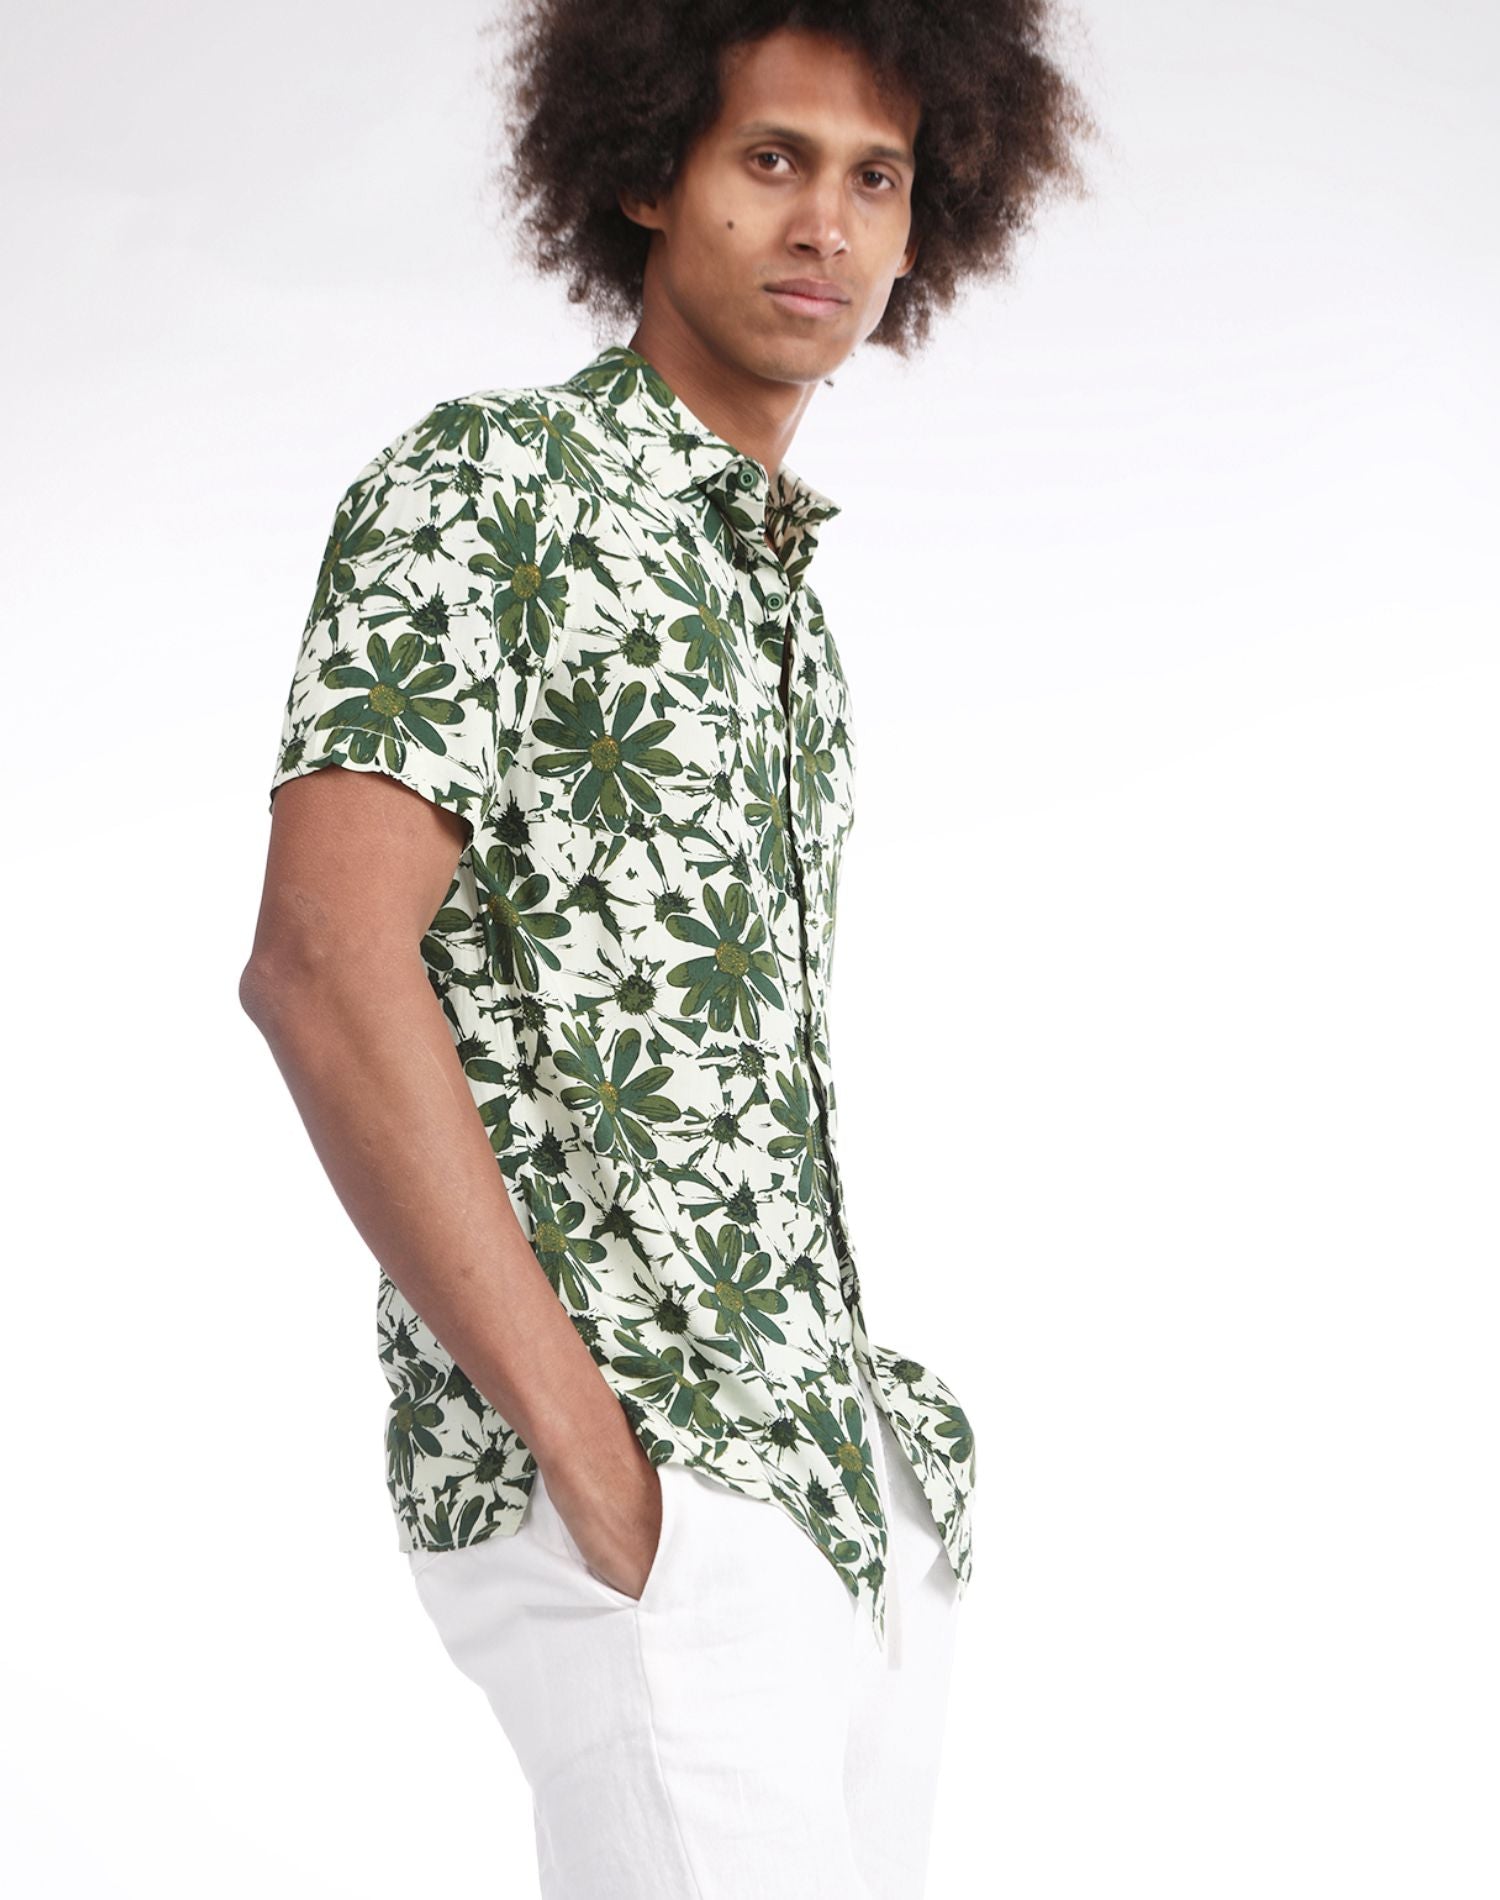 Camisa hawaiana blanca con margaritas verdes